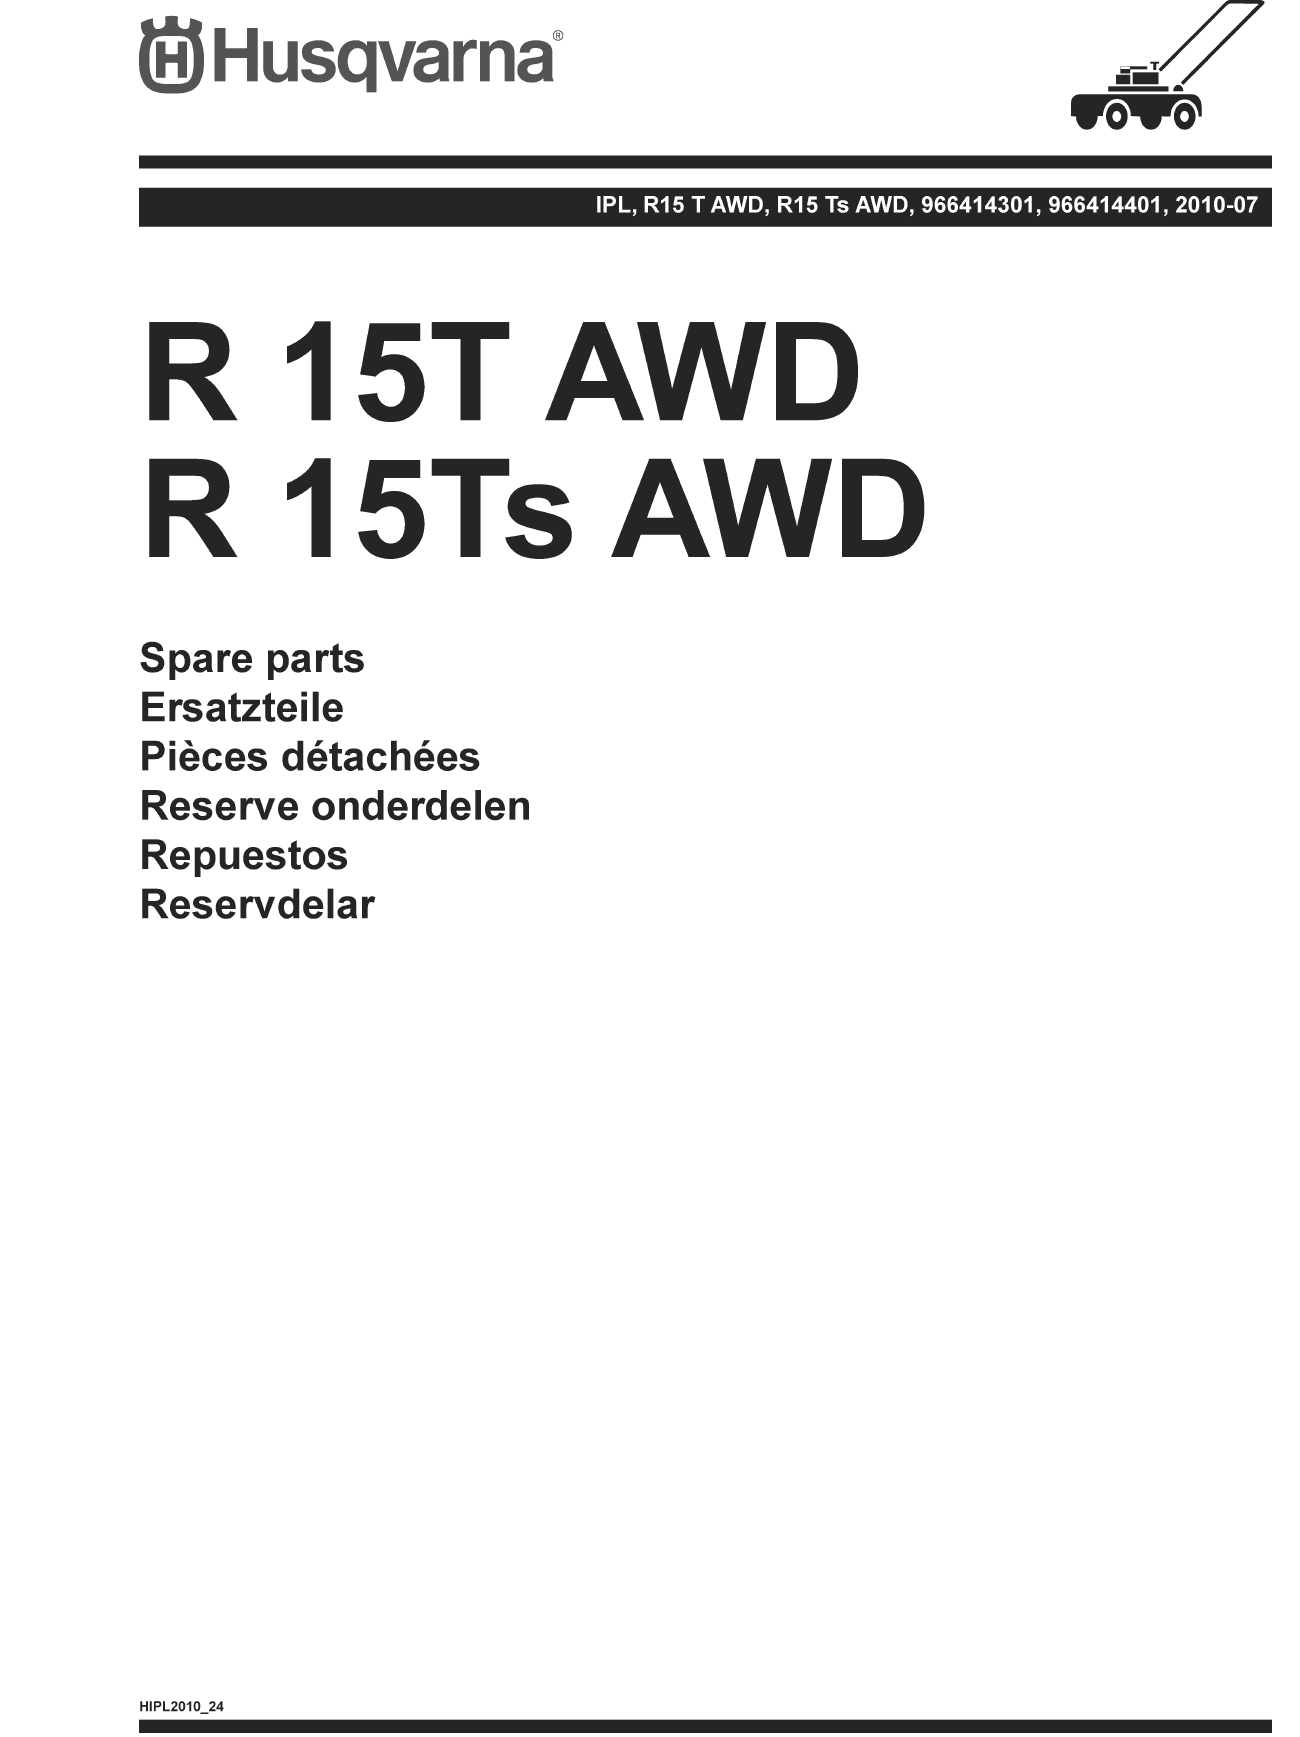 Райдер R15TAWD (2010-07)(PNC 966414301)